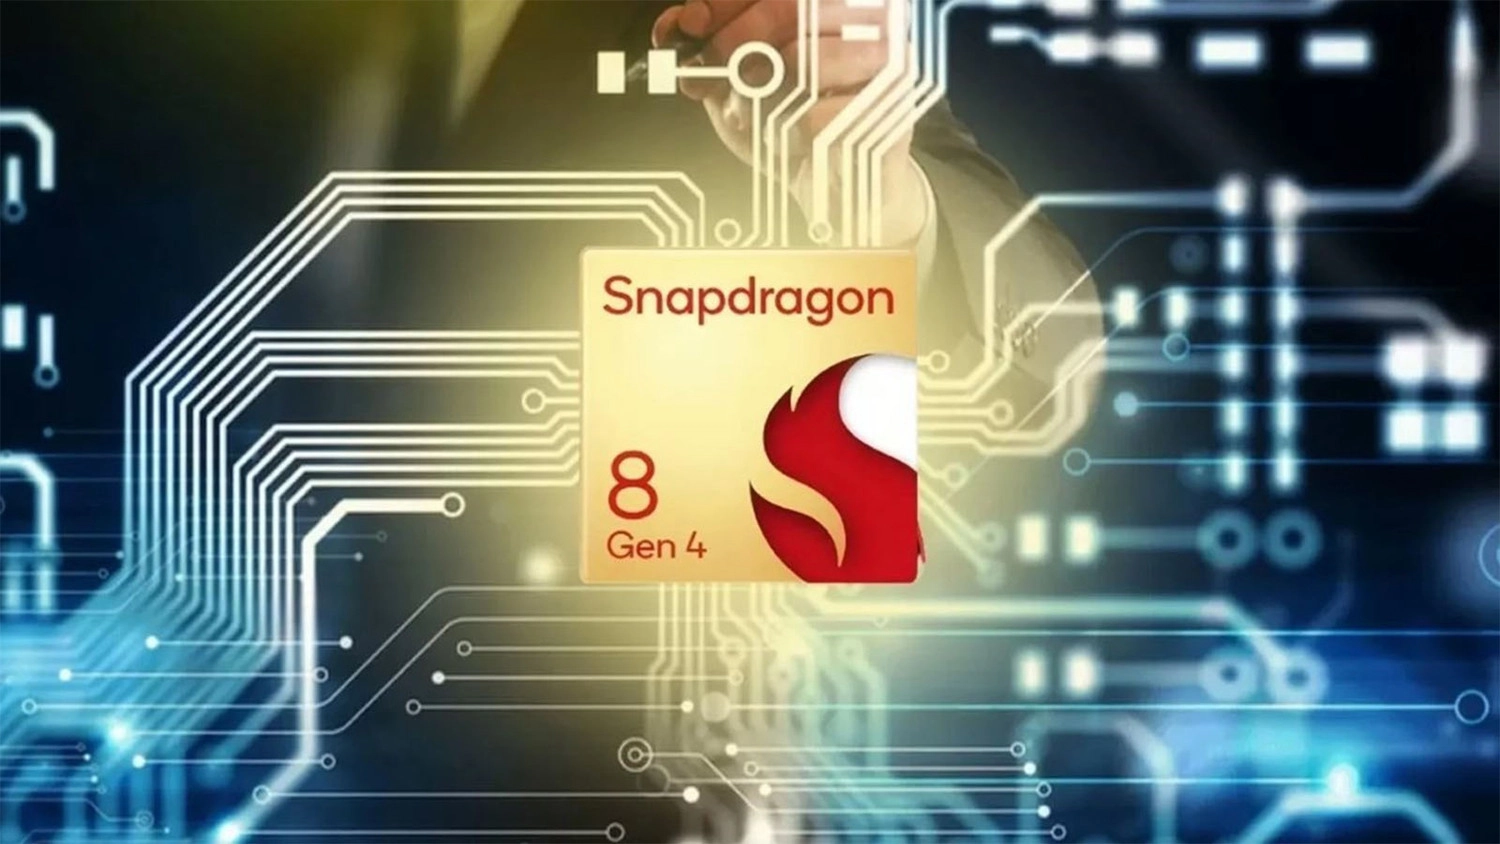 Đây là điện thoại đầu tiên được trang bị Snapdragon 8 Gen 4 Chipset Snapdragon 8 Gen 4 của Qualcomm